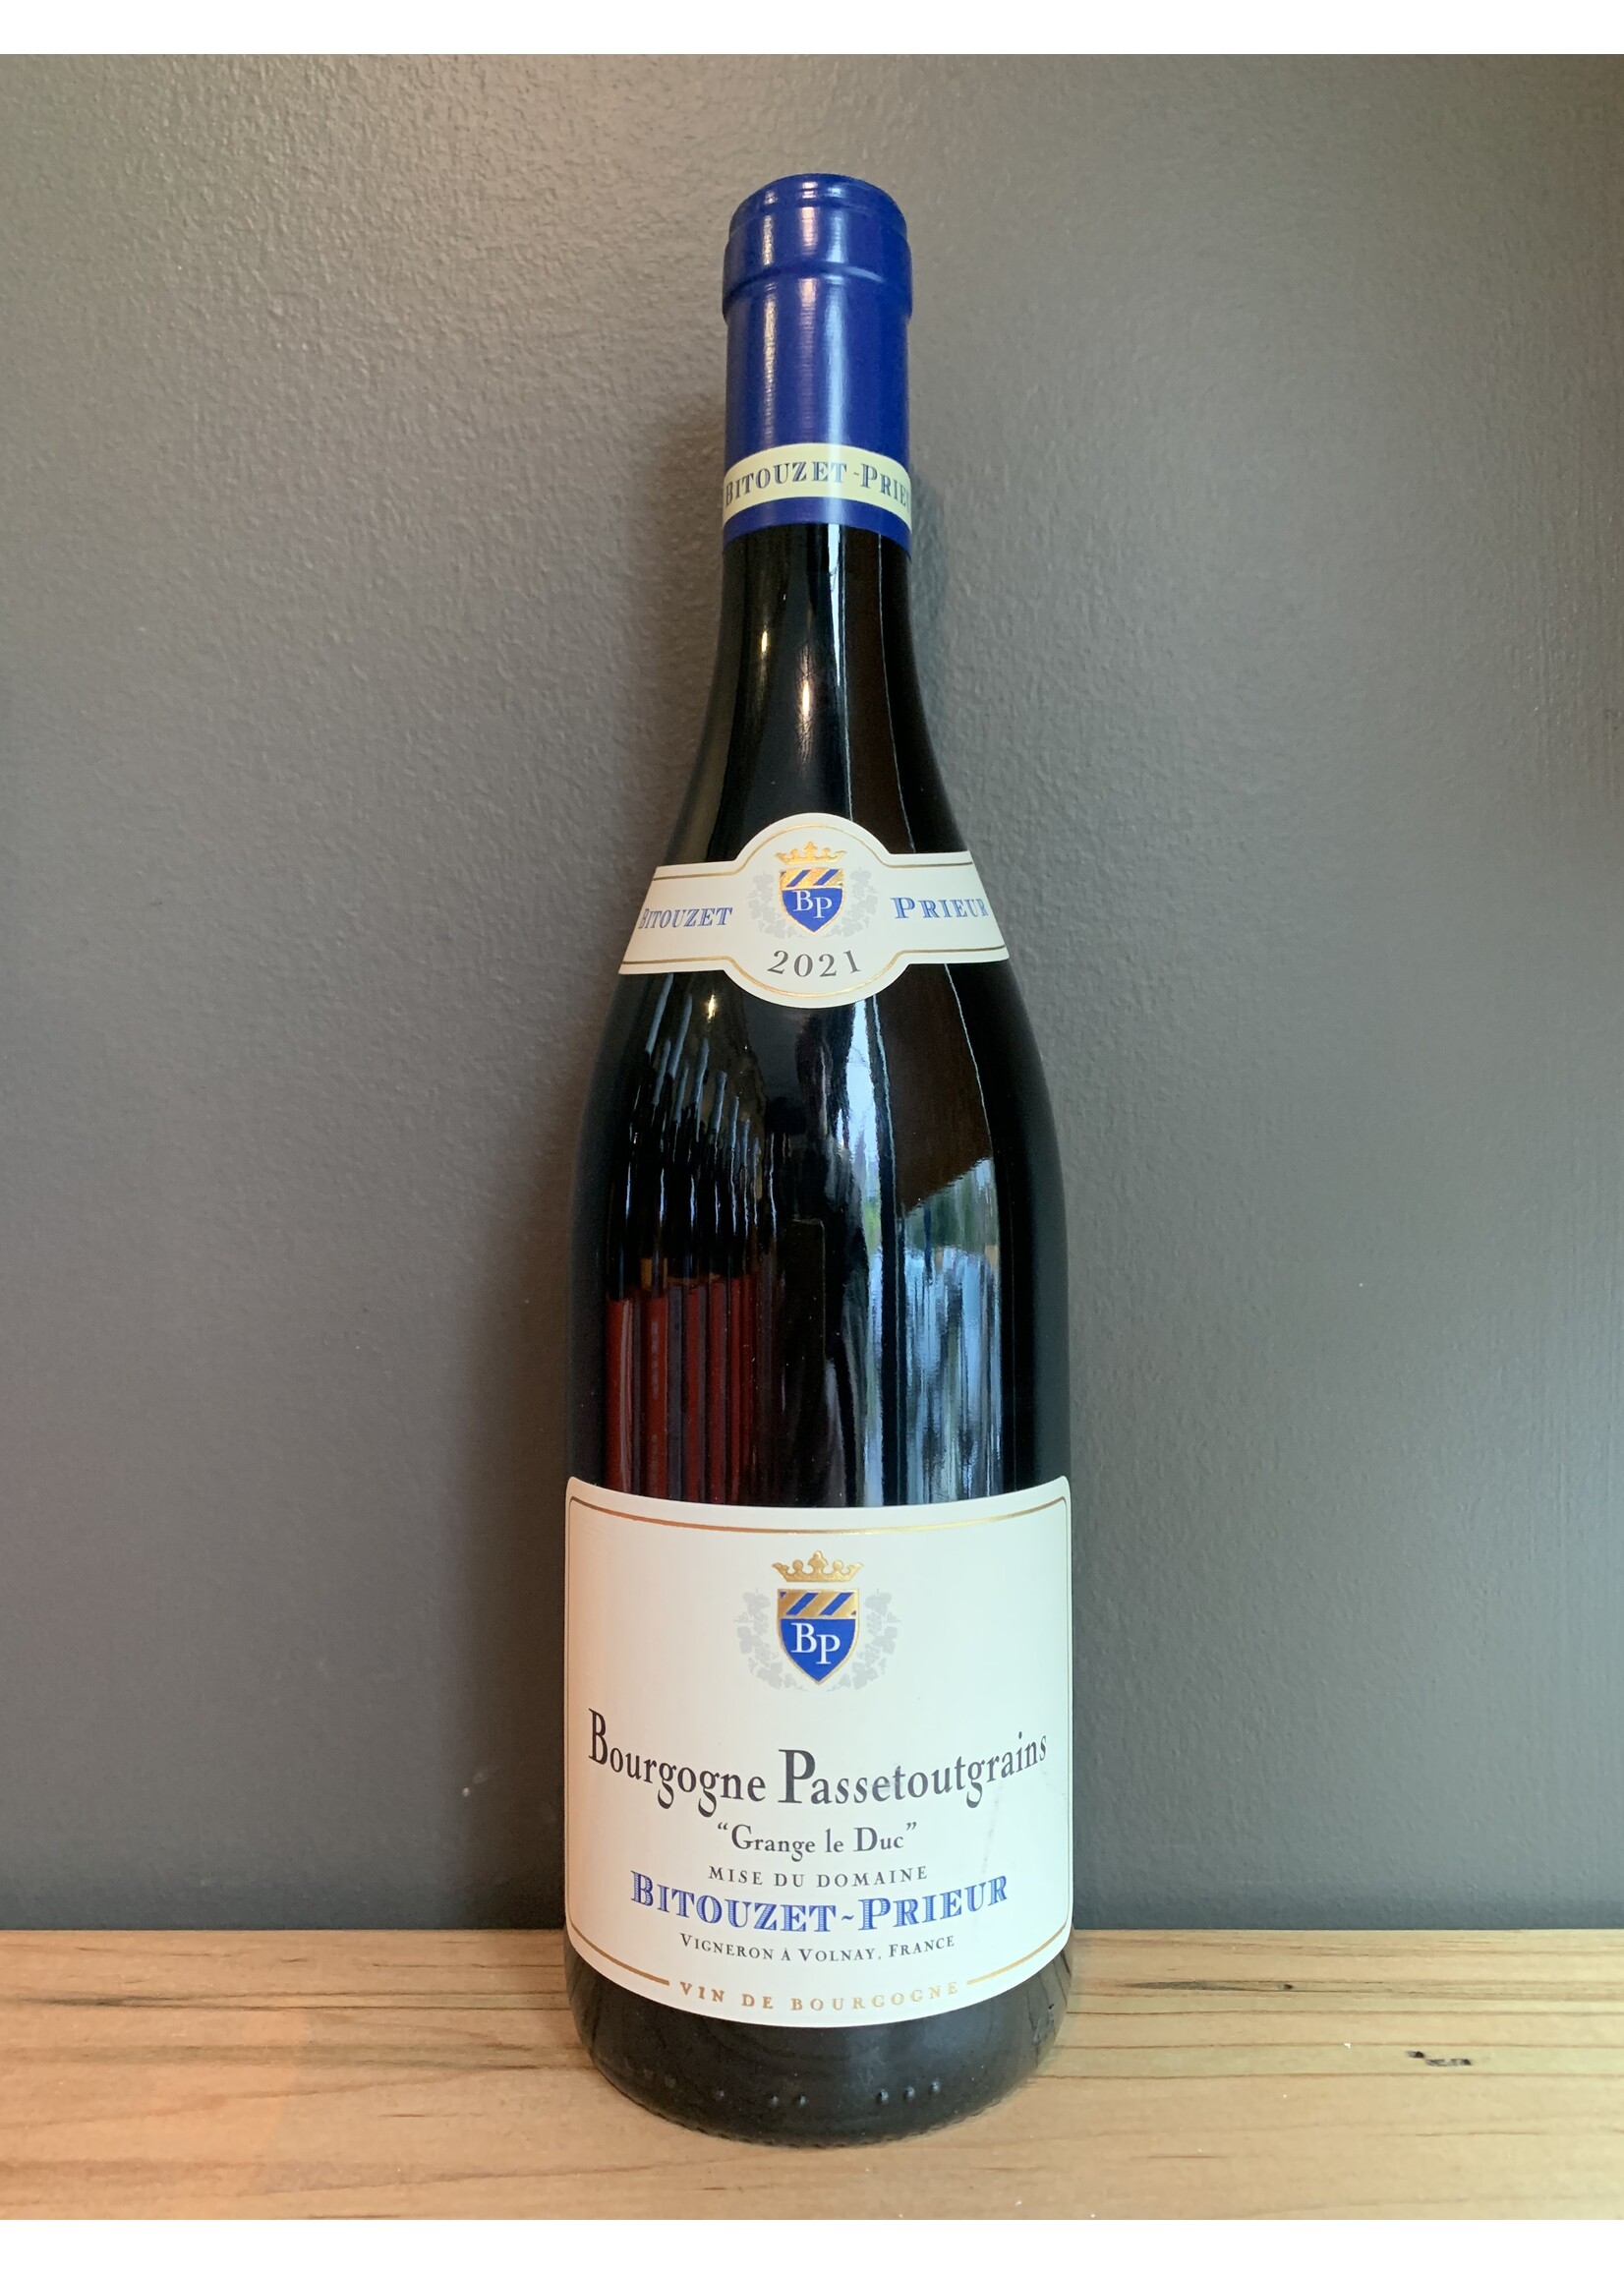 Rosenthal Wine Merchants Bitouzet-Prieur - Bourgogne Passetoutgrains "Grange le Duc" 2021